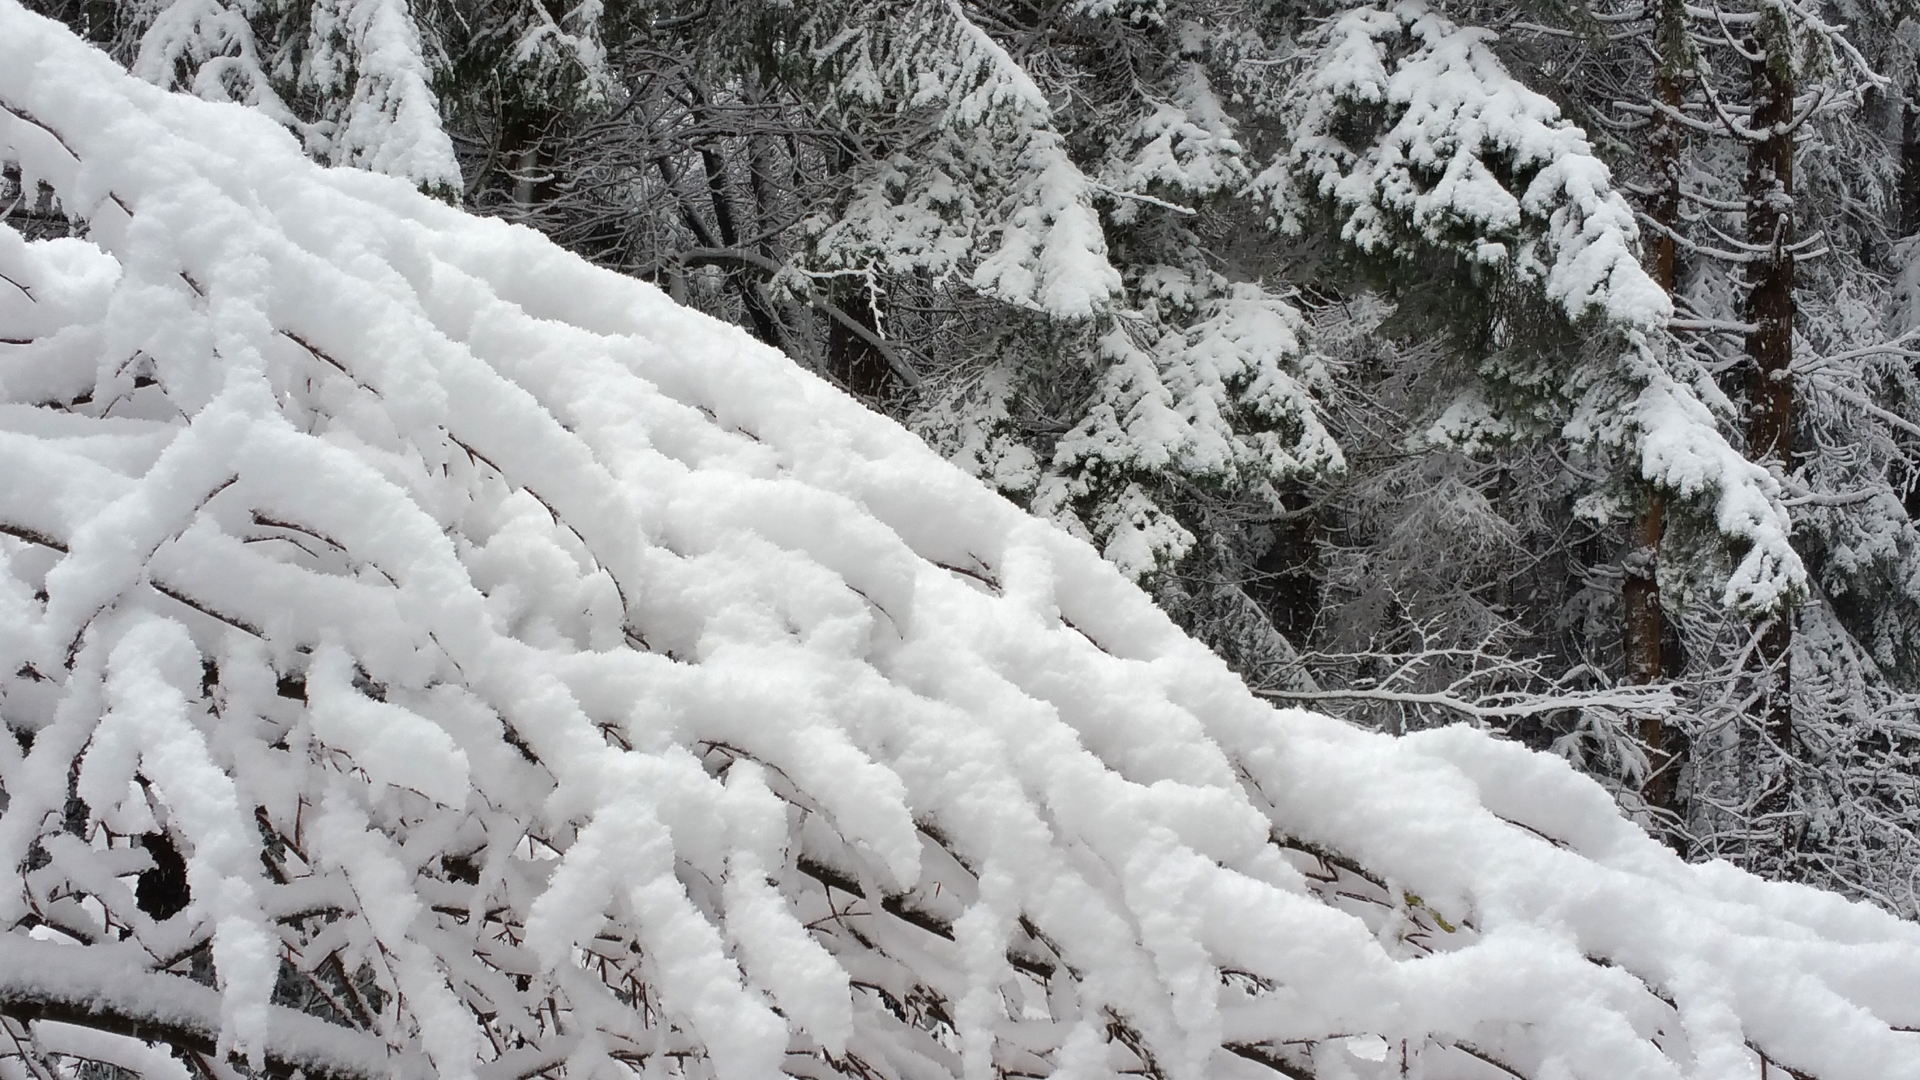 Fotostrecke Schnee Abbildung 21: Verschneite Äste